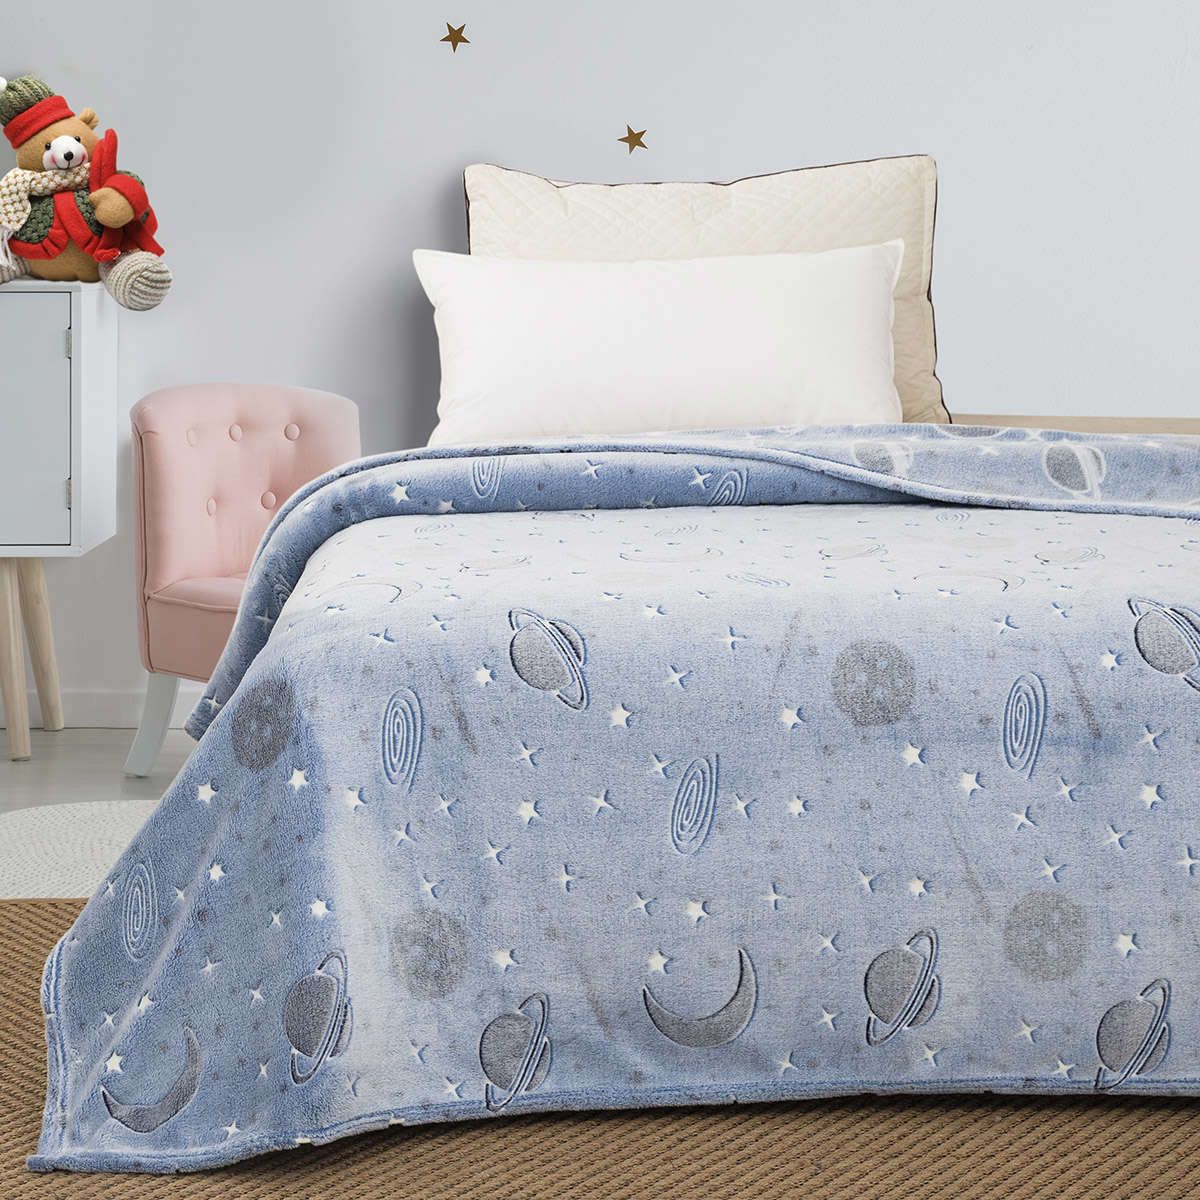 Παιδική κουβέρτα μονή φωσφορίζουσα Art 6250 light blue beauty home